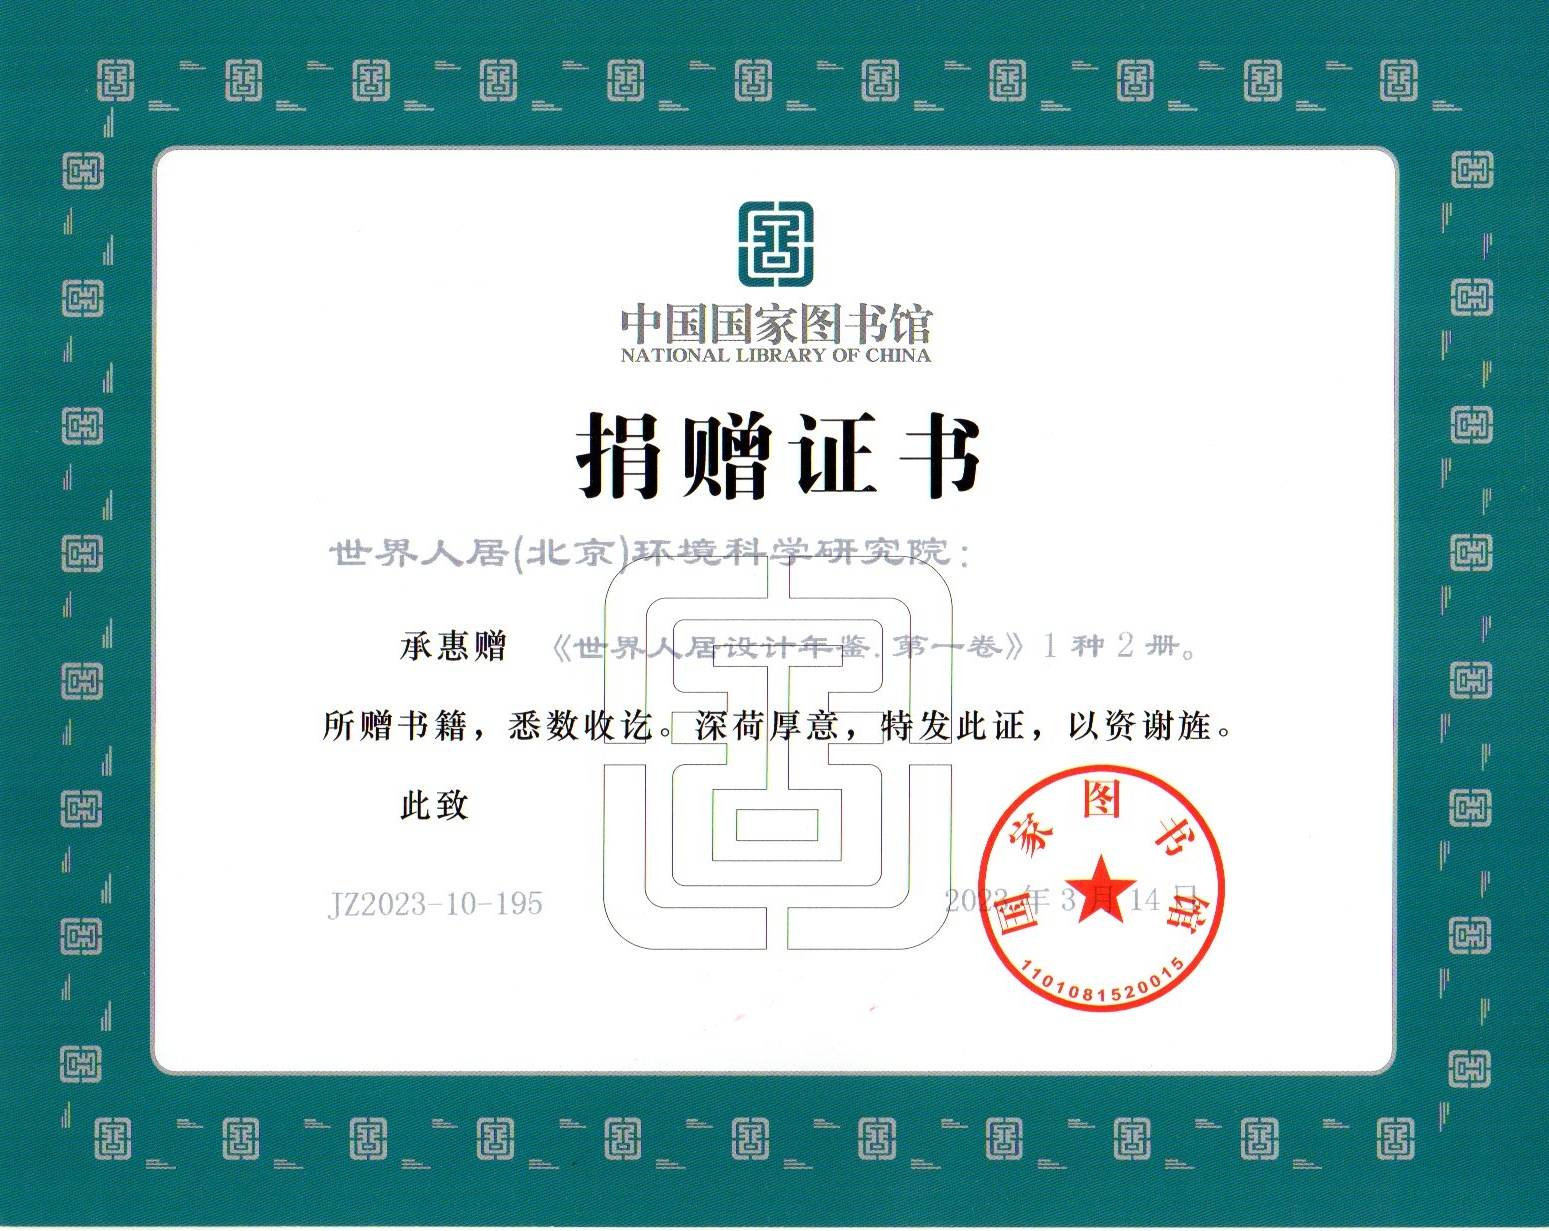 中国国家图书馆收藏《世界人居设计年鉴》第一卷，颁发收藏证书